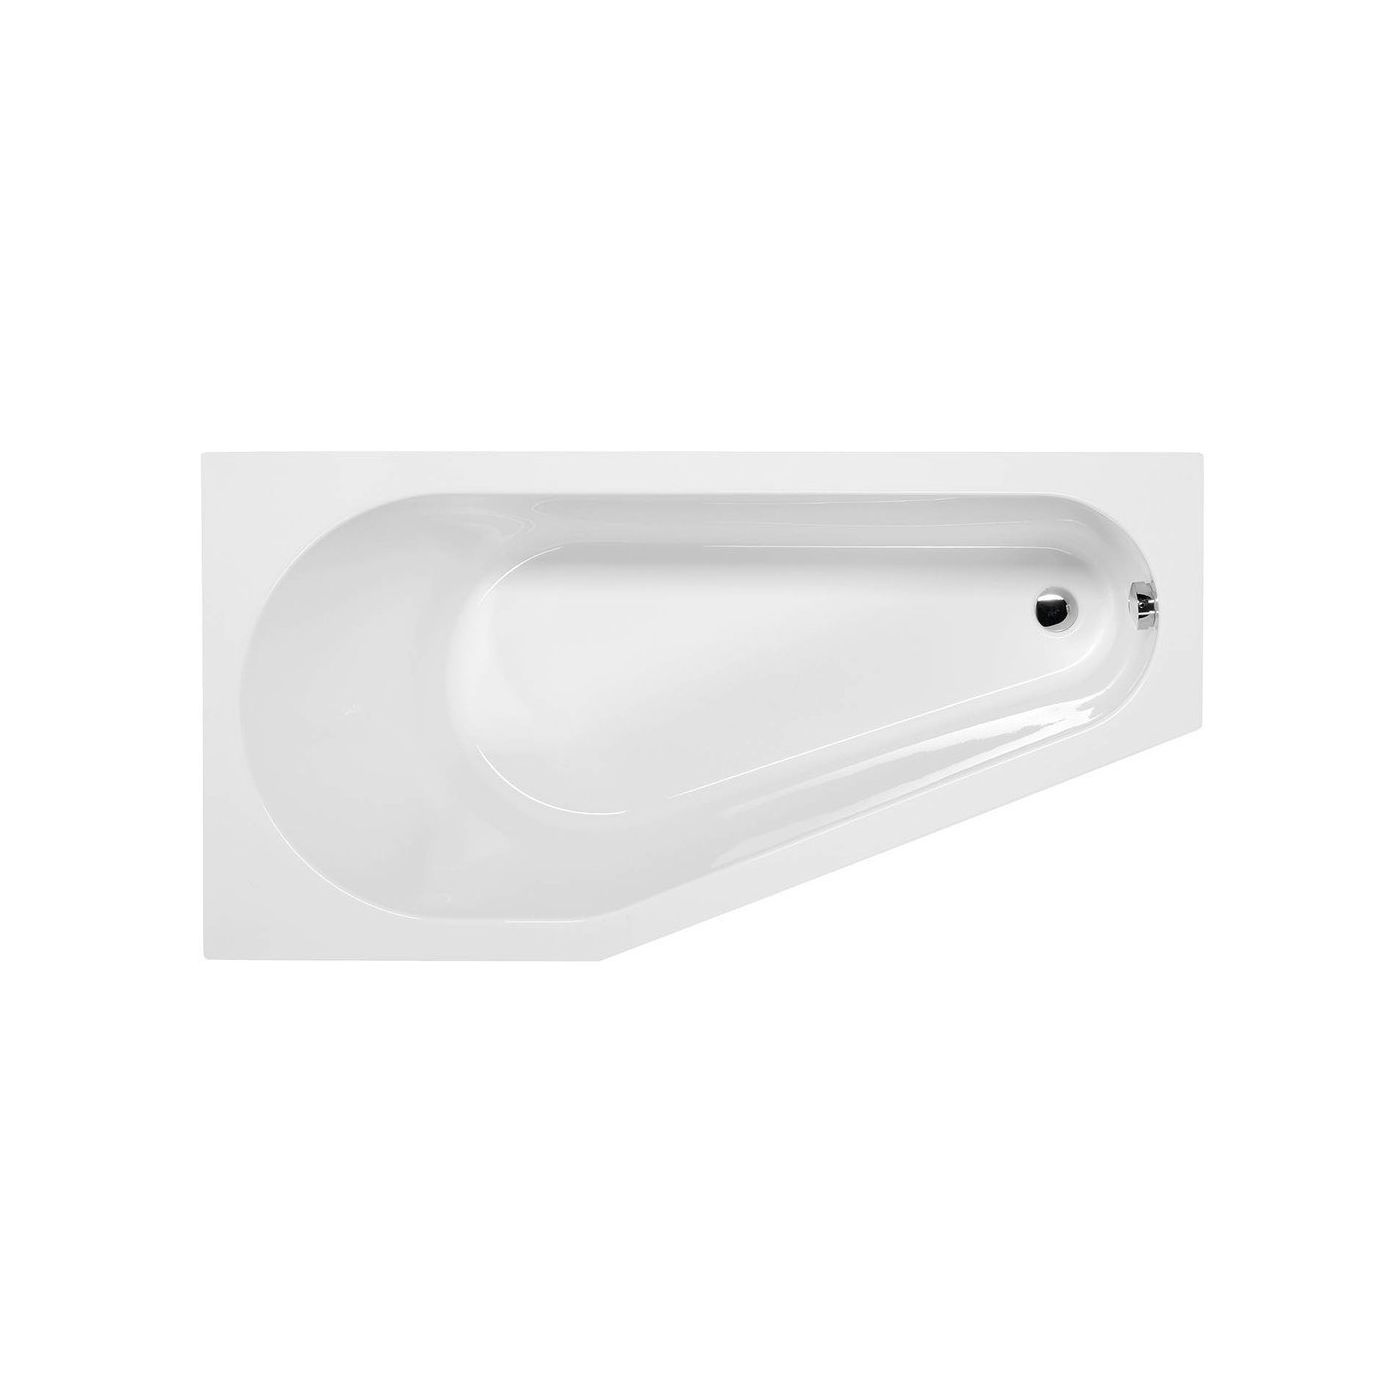 Tigra Asymmetrische badkuip 150x75x46cm inclusief steunpoten links/wit